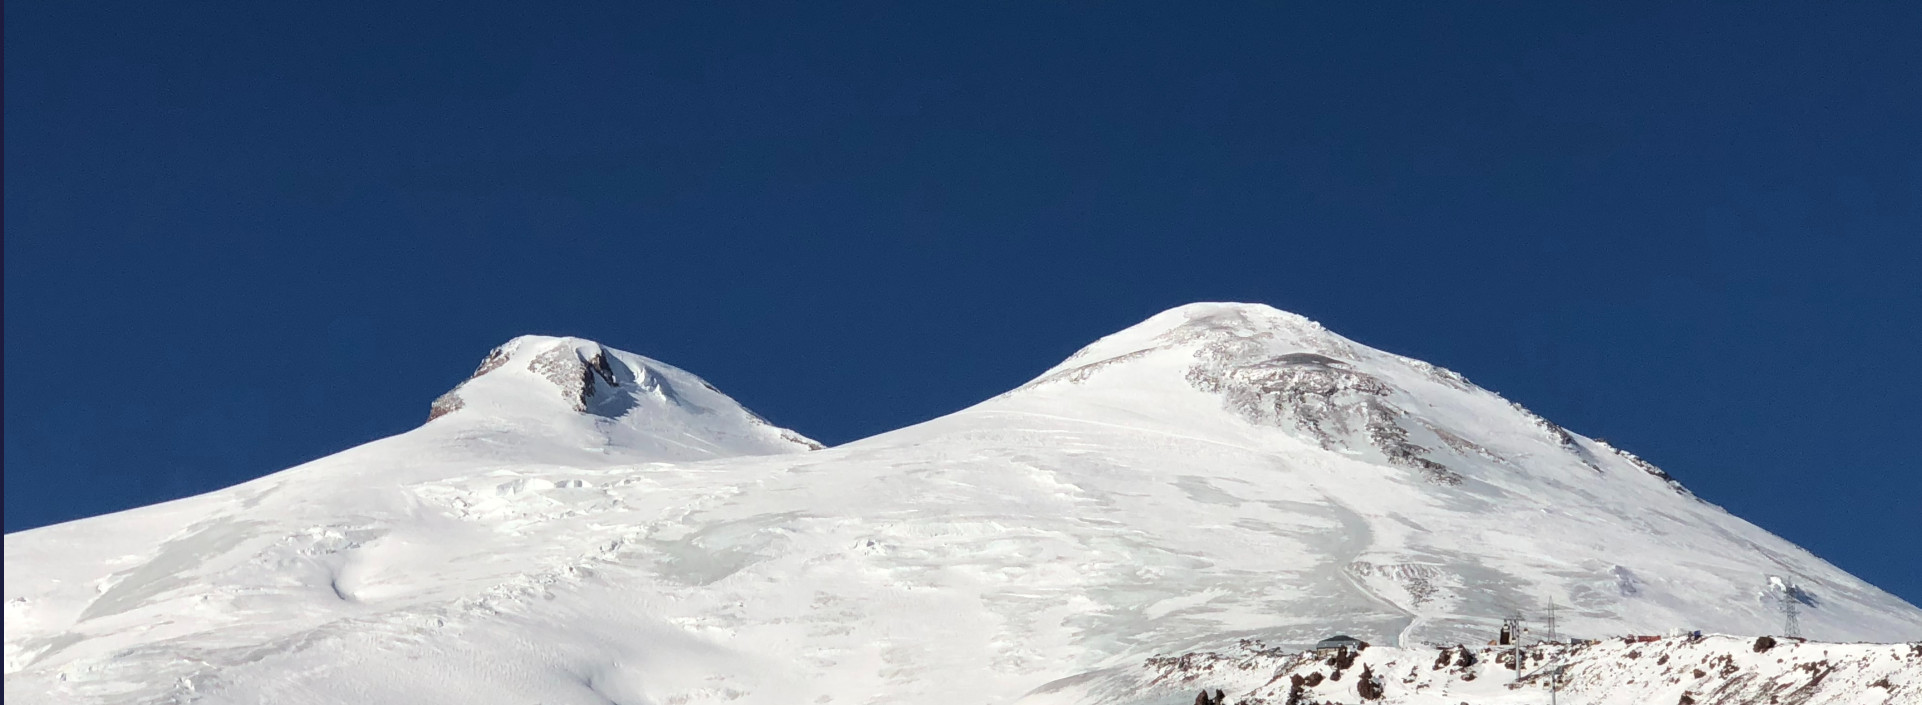 Elbrus - wierzchołki zachodni i wschodni